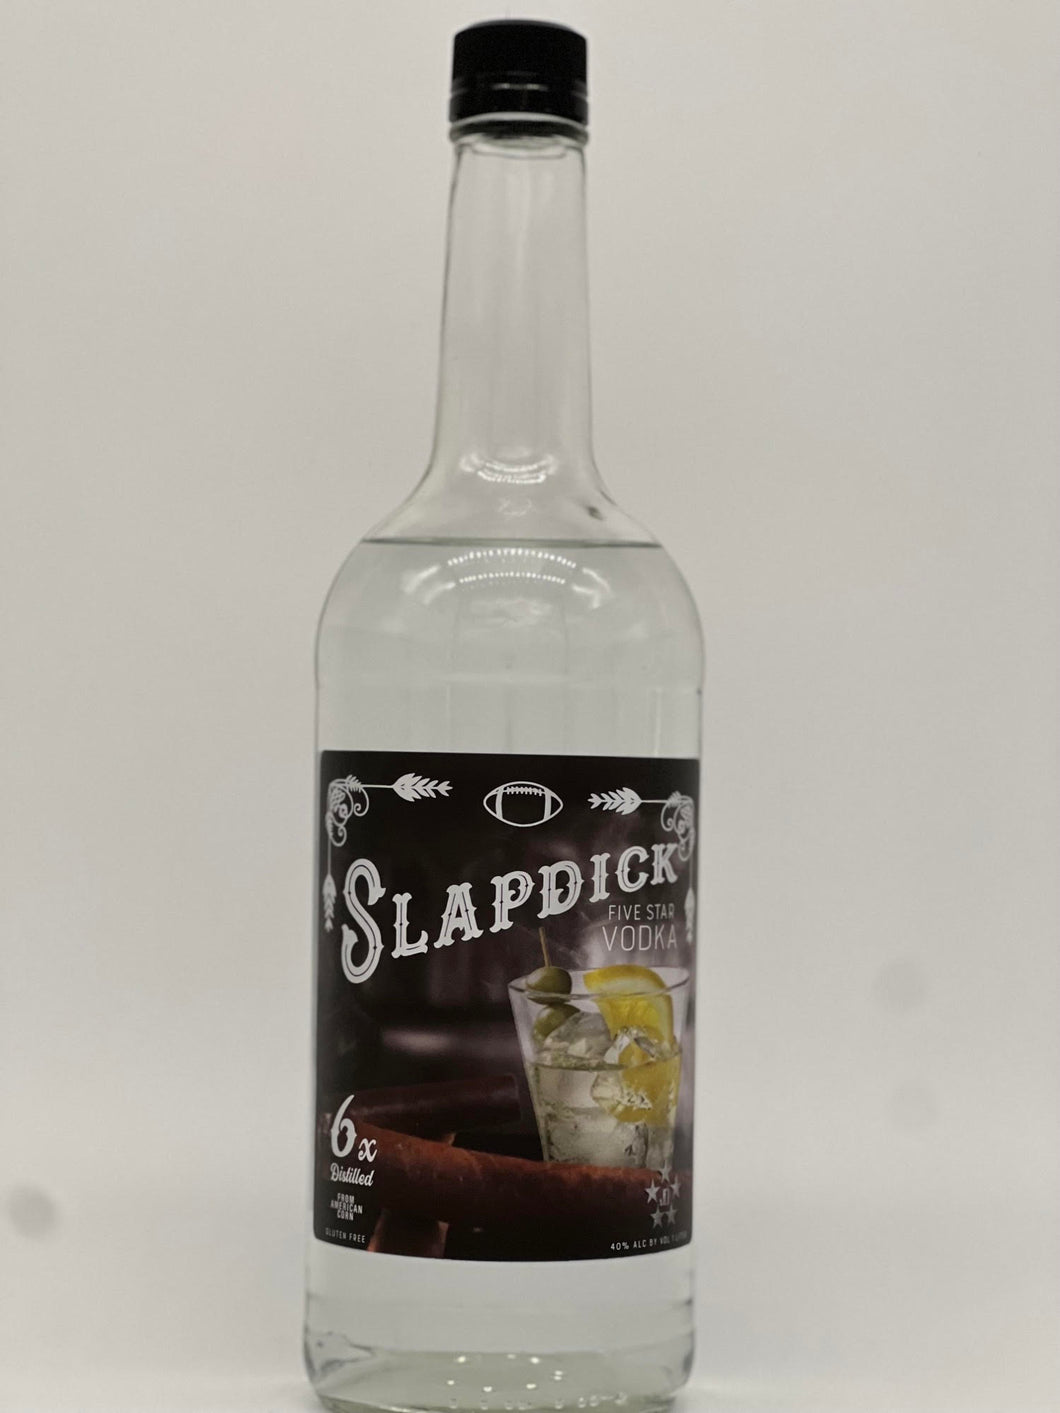 Slapdick Five Star Vodka